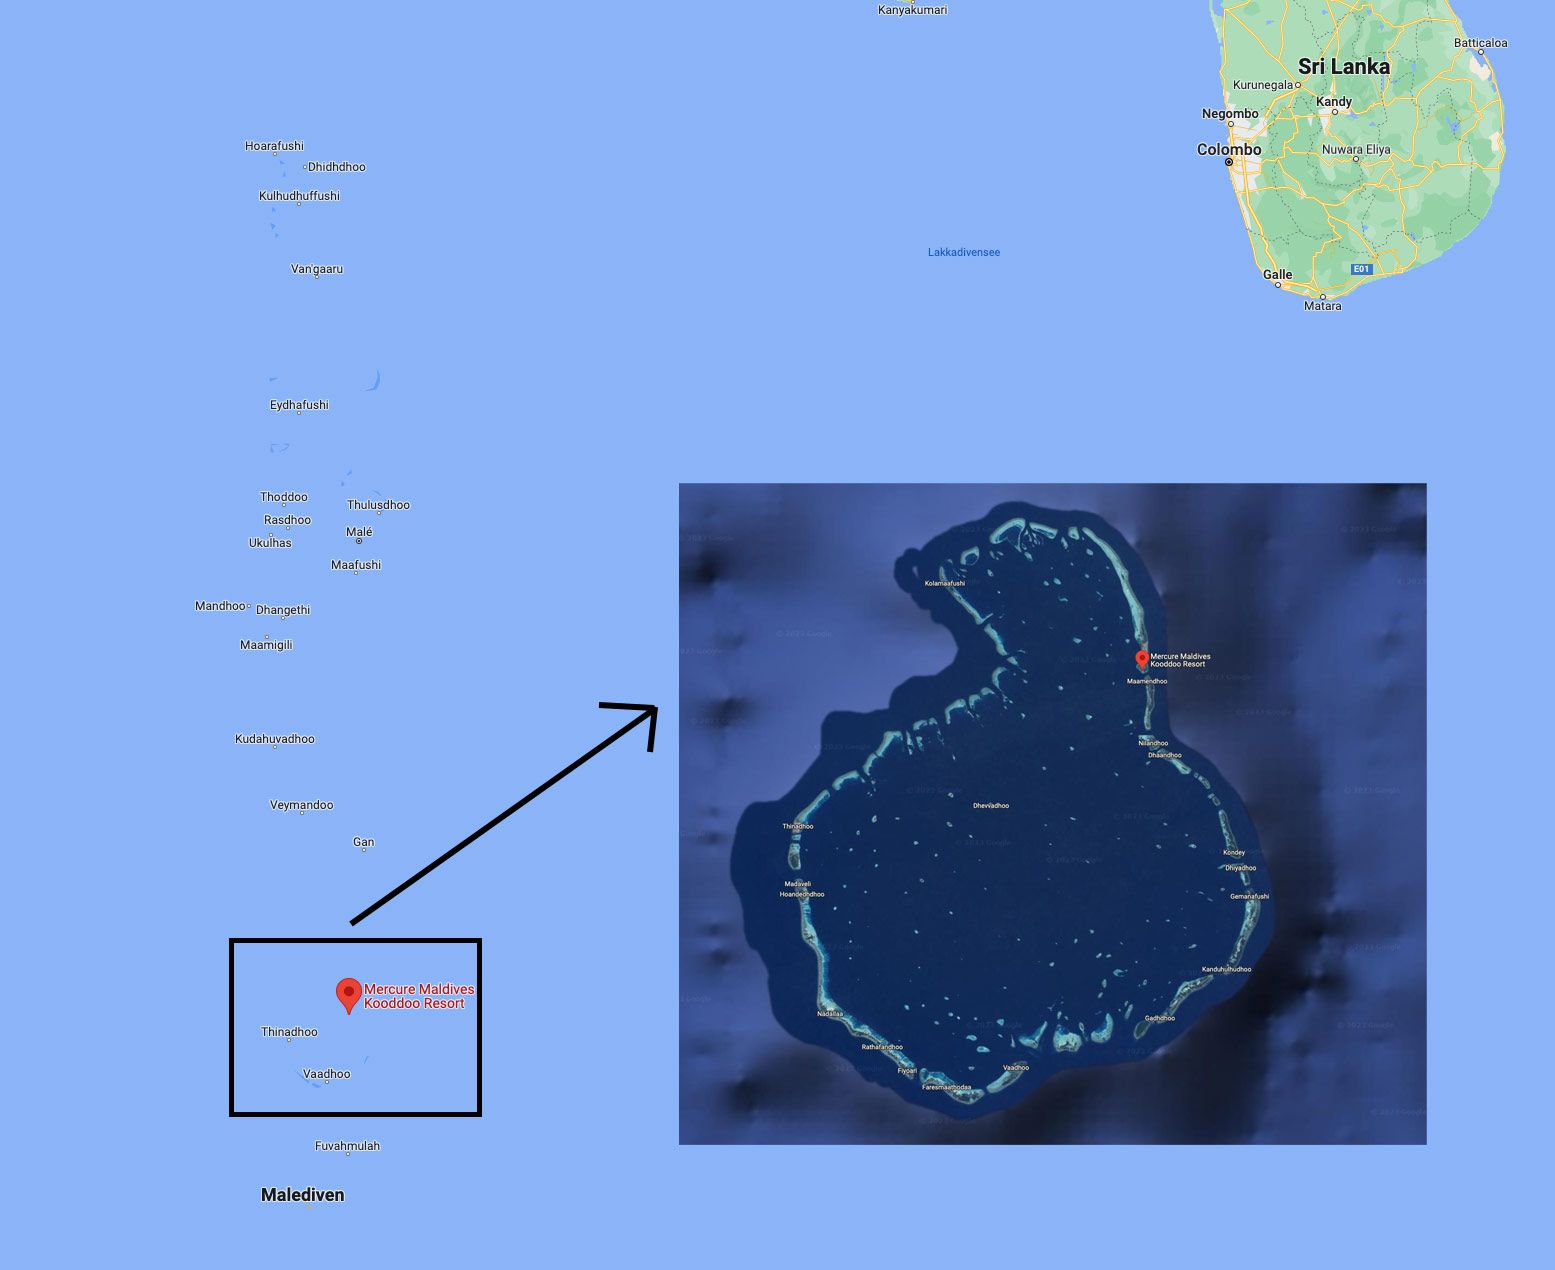 Mercure Maldives Kooddoo - Lage im indischen Ozean